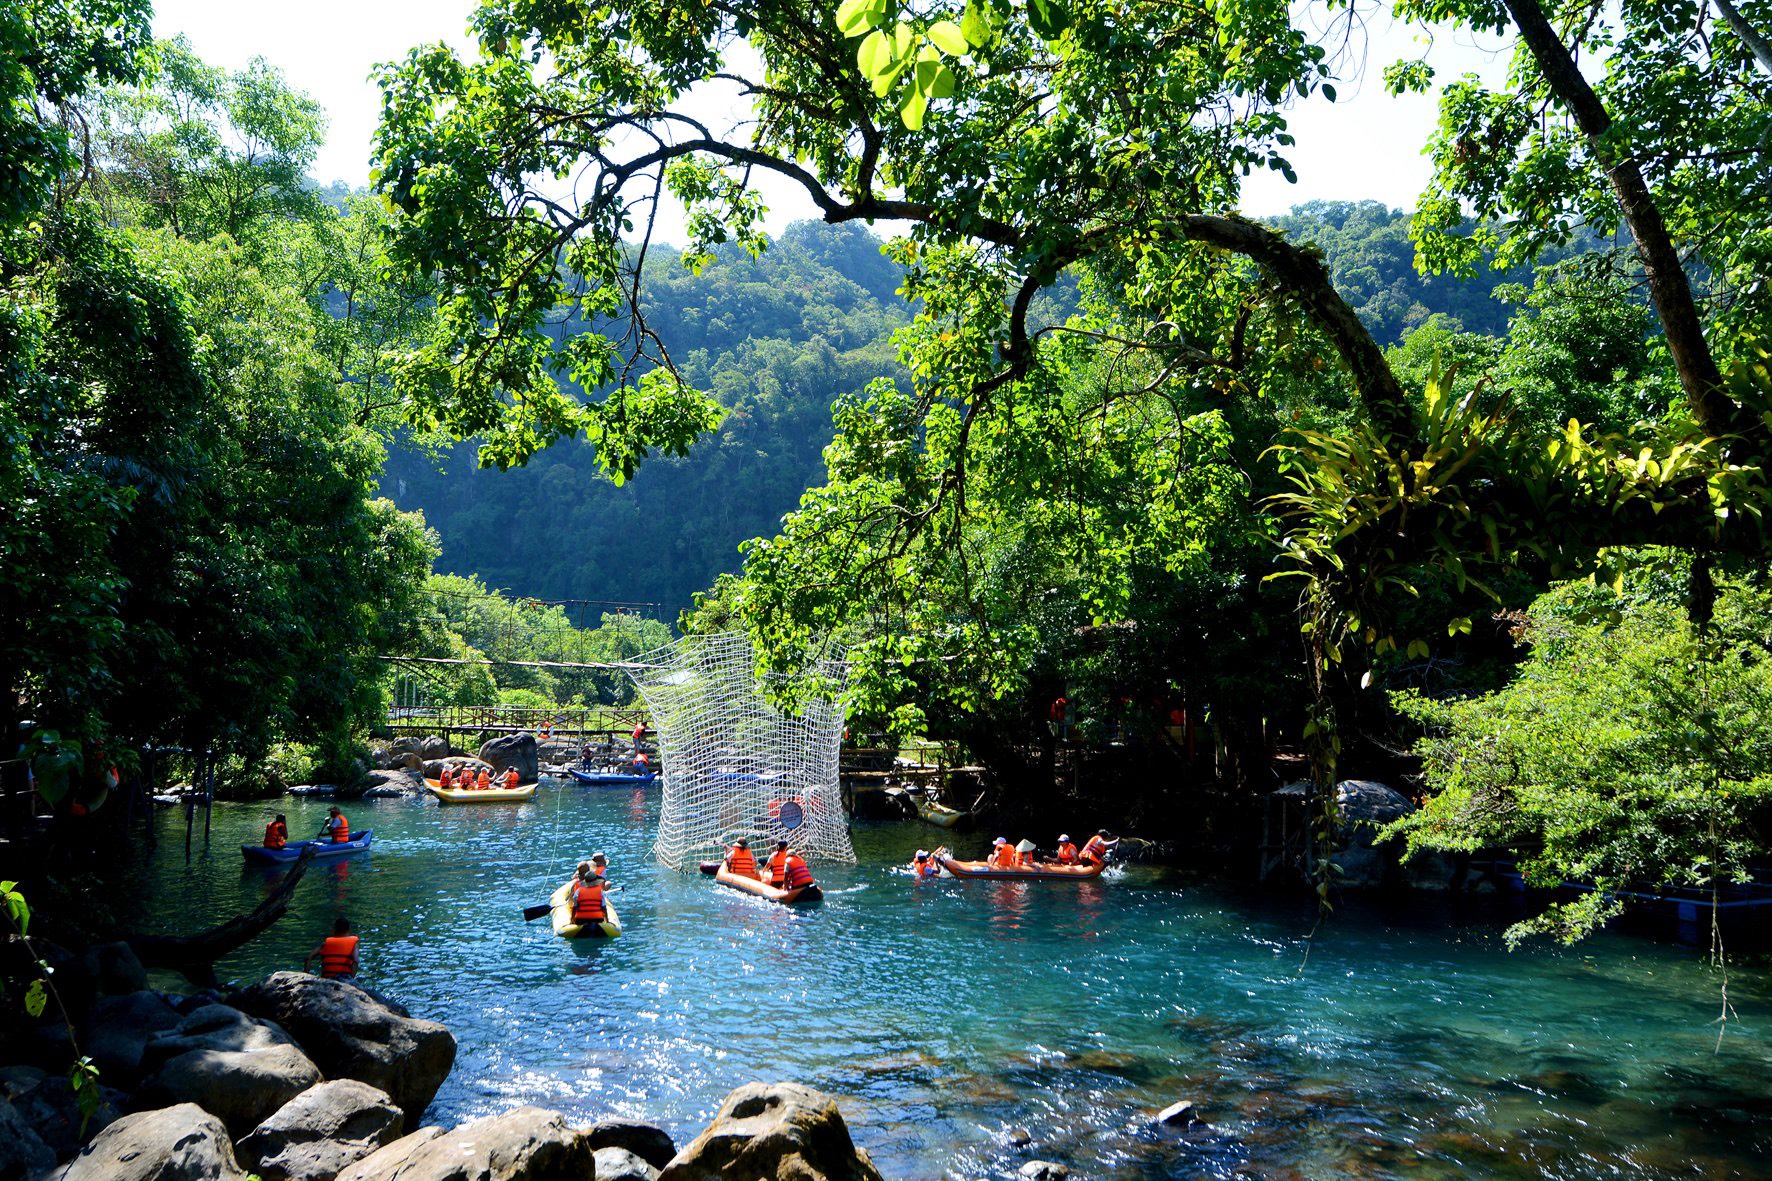 Suối Nước Mooc nằm trong quần thể hang động Vườn quốc gia Phong Nha Kẻ Bàng.